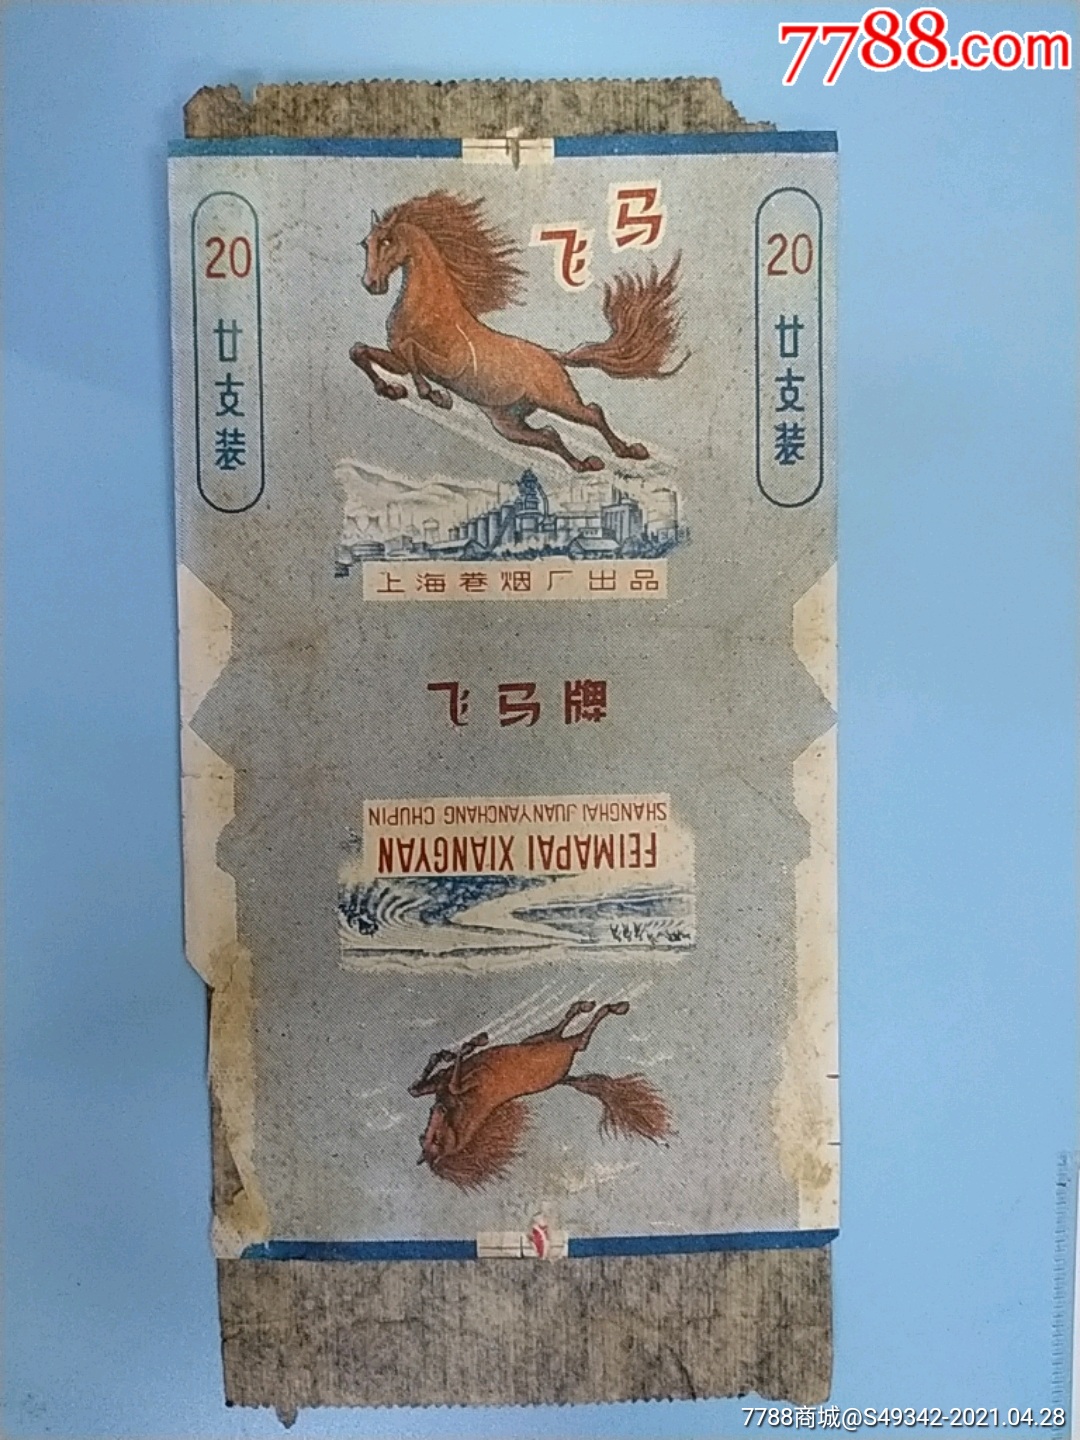 上海卷烟厂出品飞马香烟烟标带内衬纸